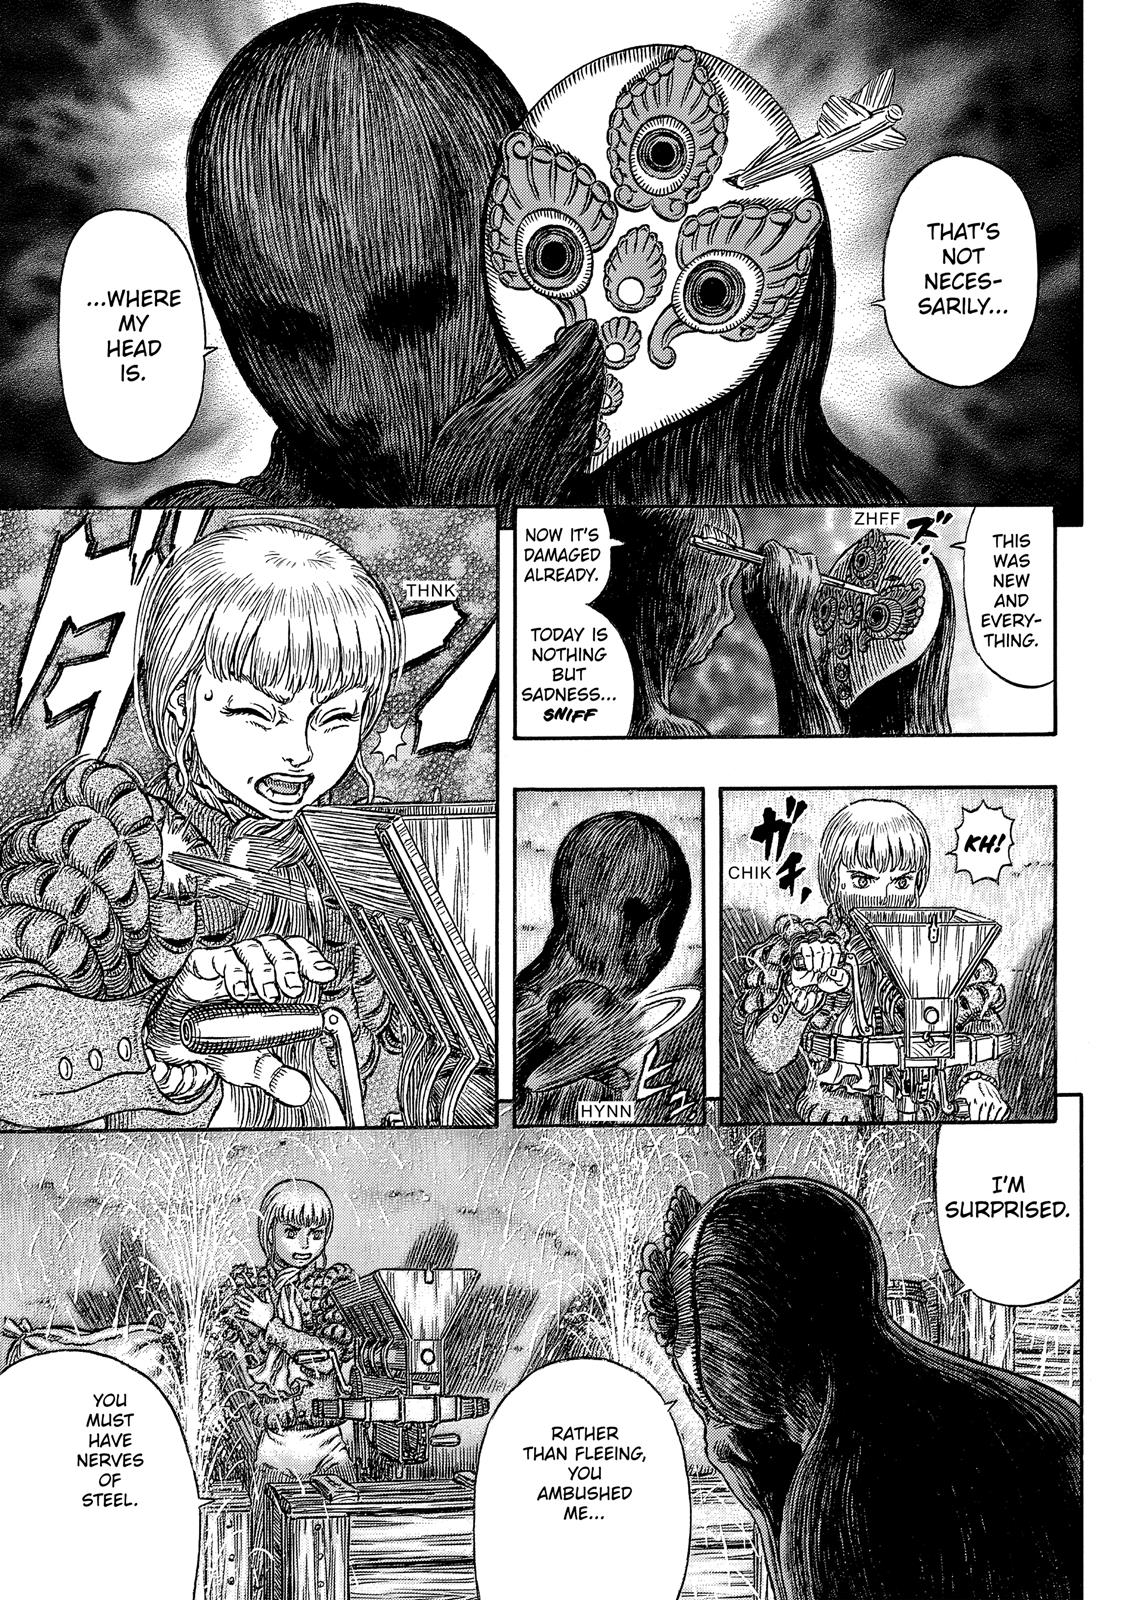 Berserk Manga Chapter 340 image 06